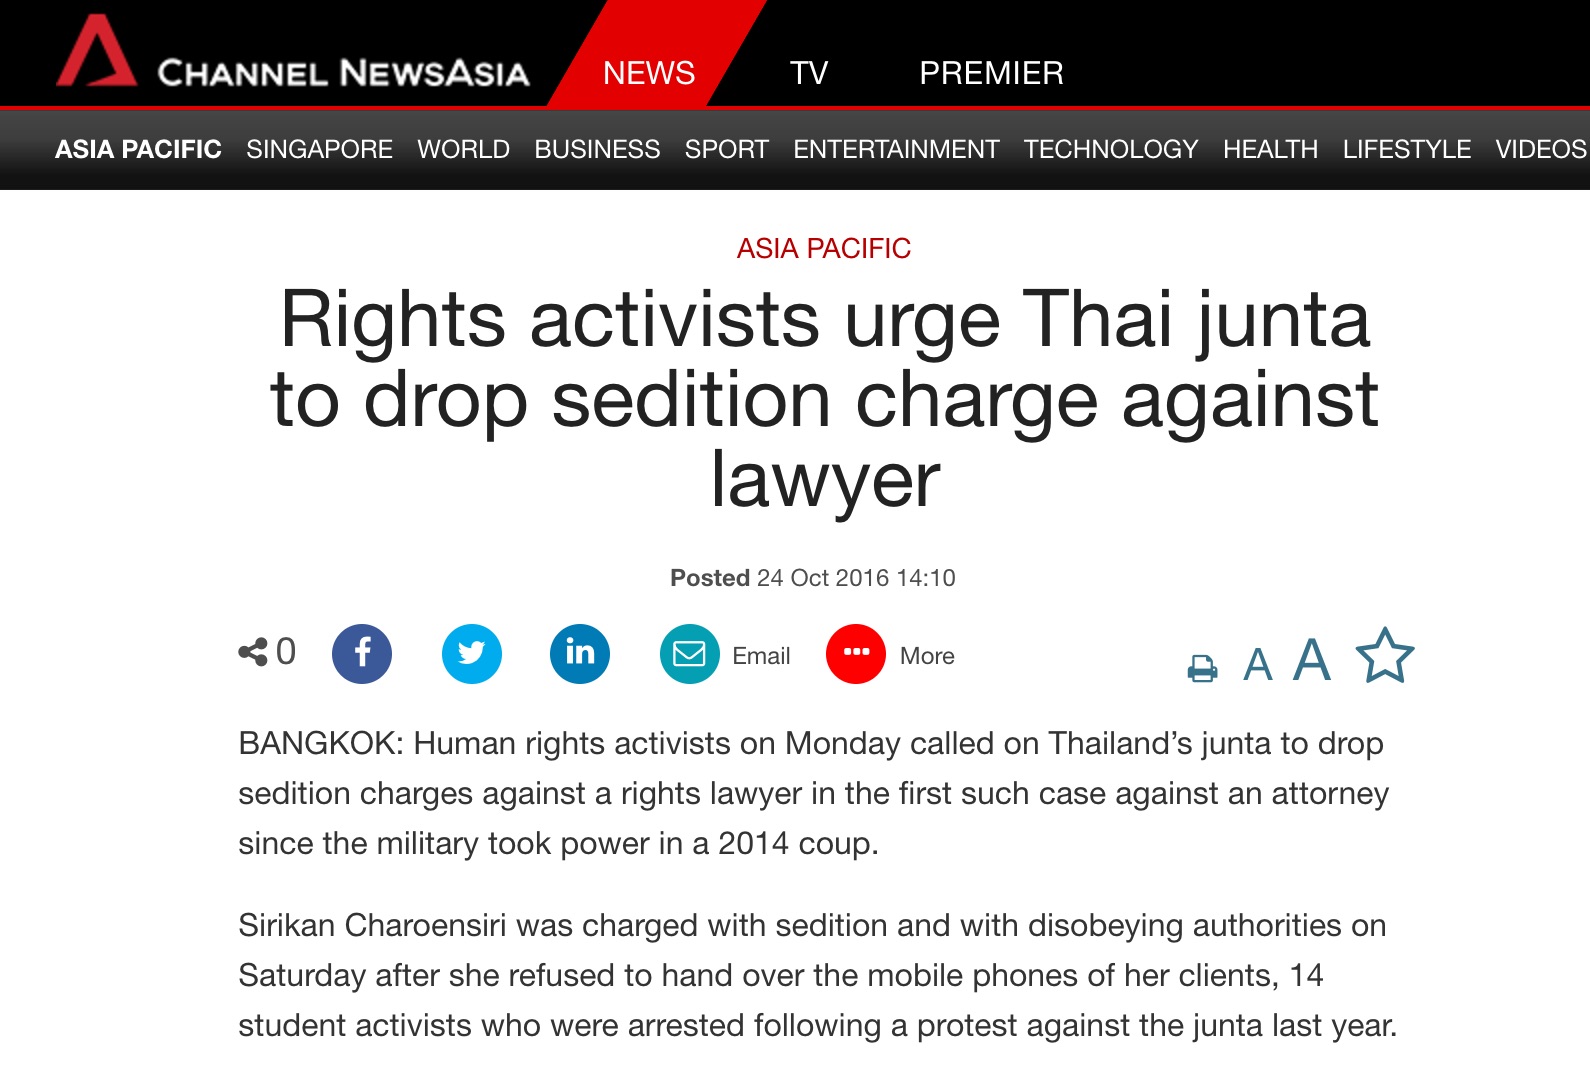 Pour la première fois depuis le coup d'Etat de mai 2014, une avocate est jugée pour sédition. Copie d'écran de Channel News Asia, le 24 octobre 2016